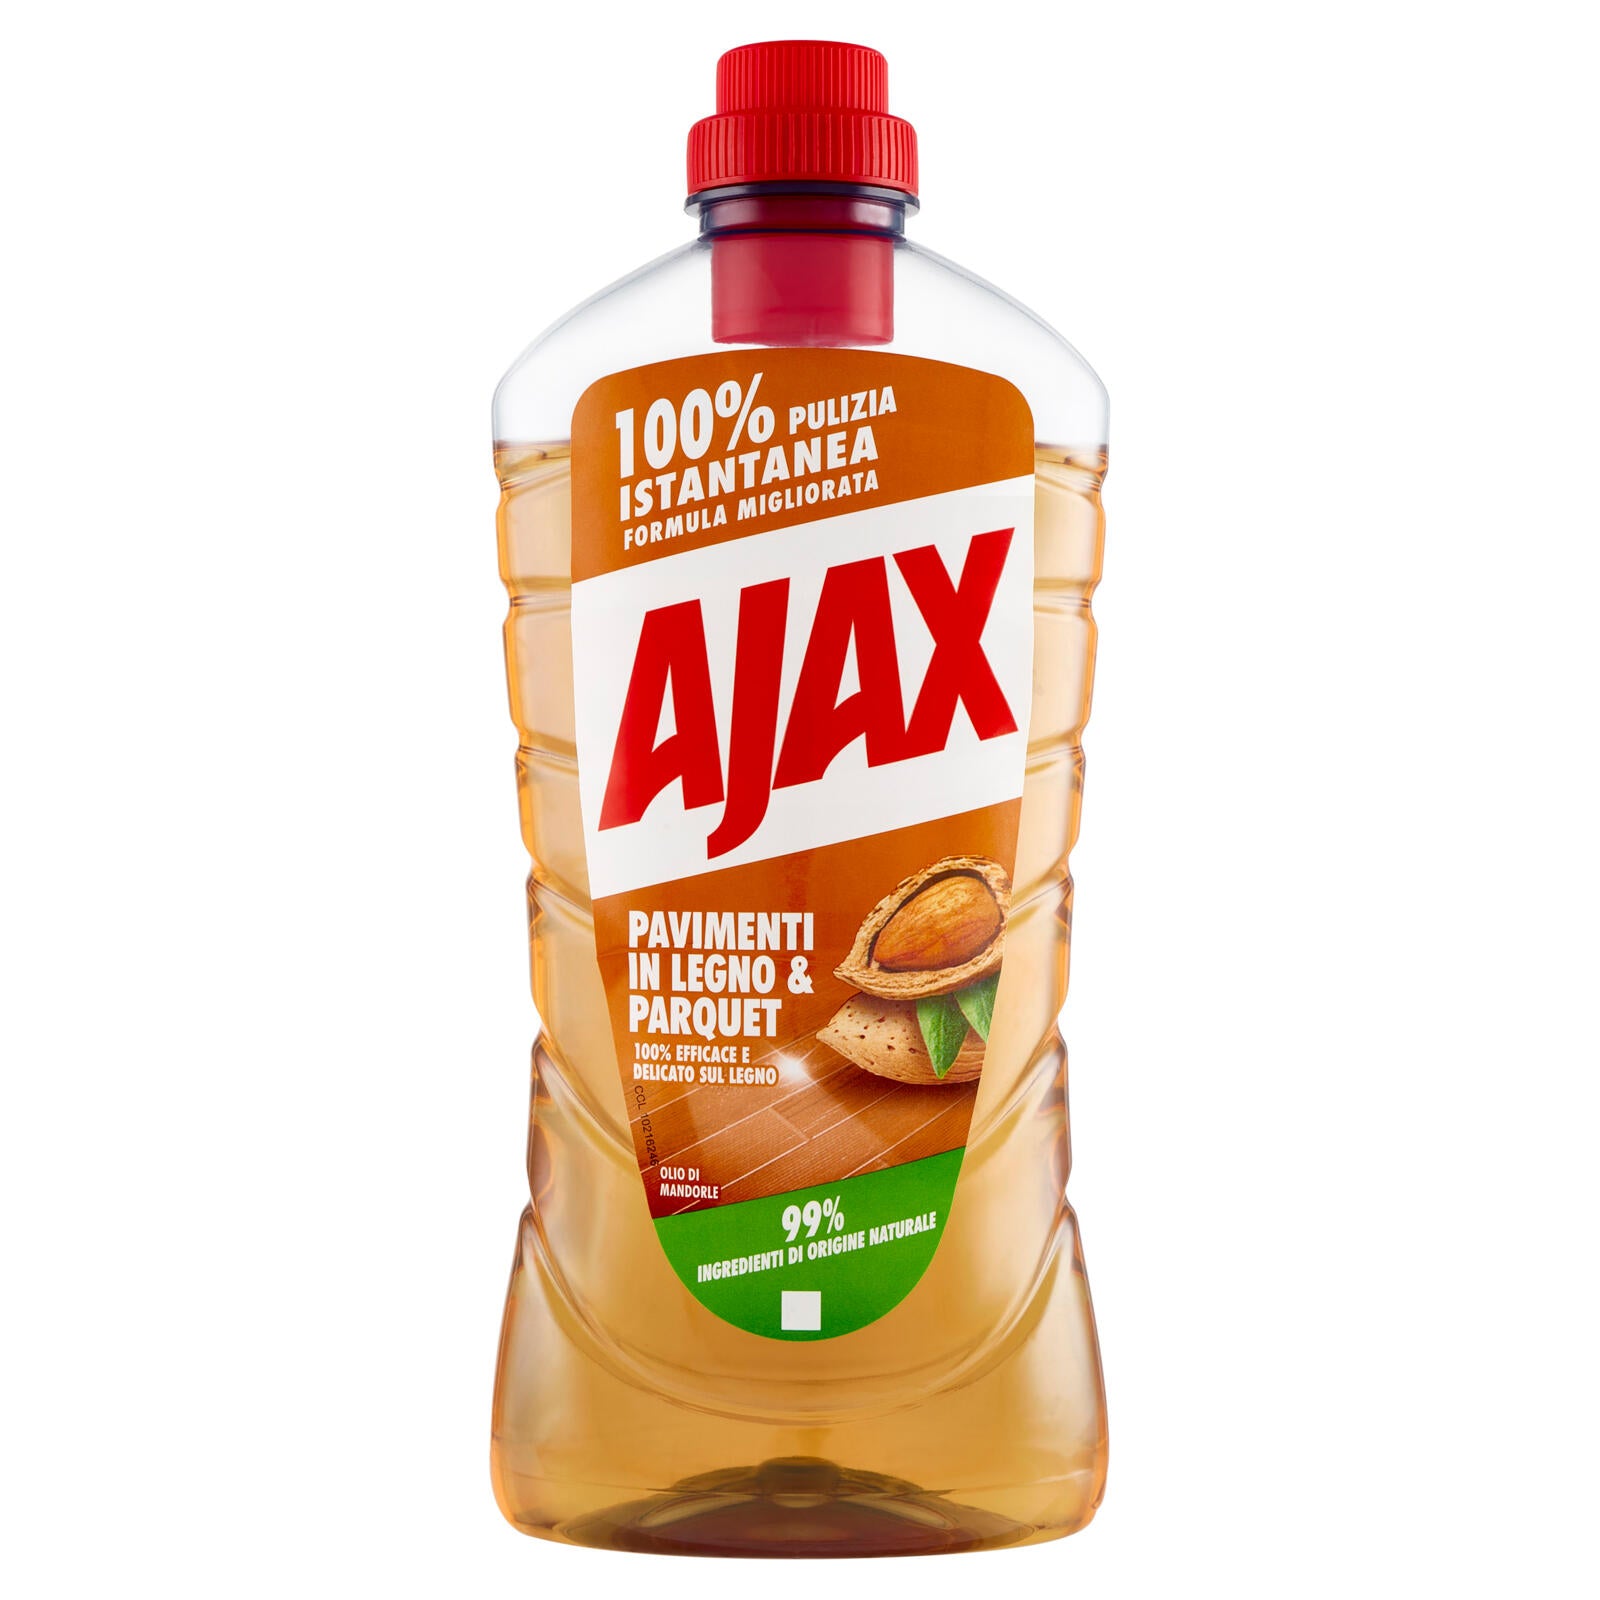 Ajax detersivo pavimenti in Legno e Parquet olio di mandorle 950ml ->